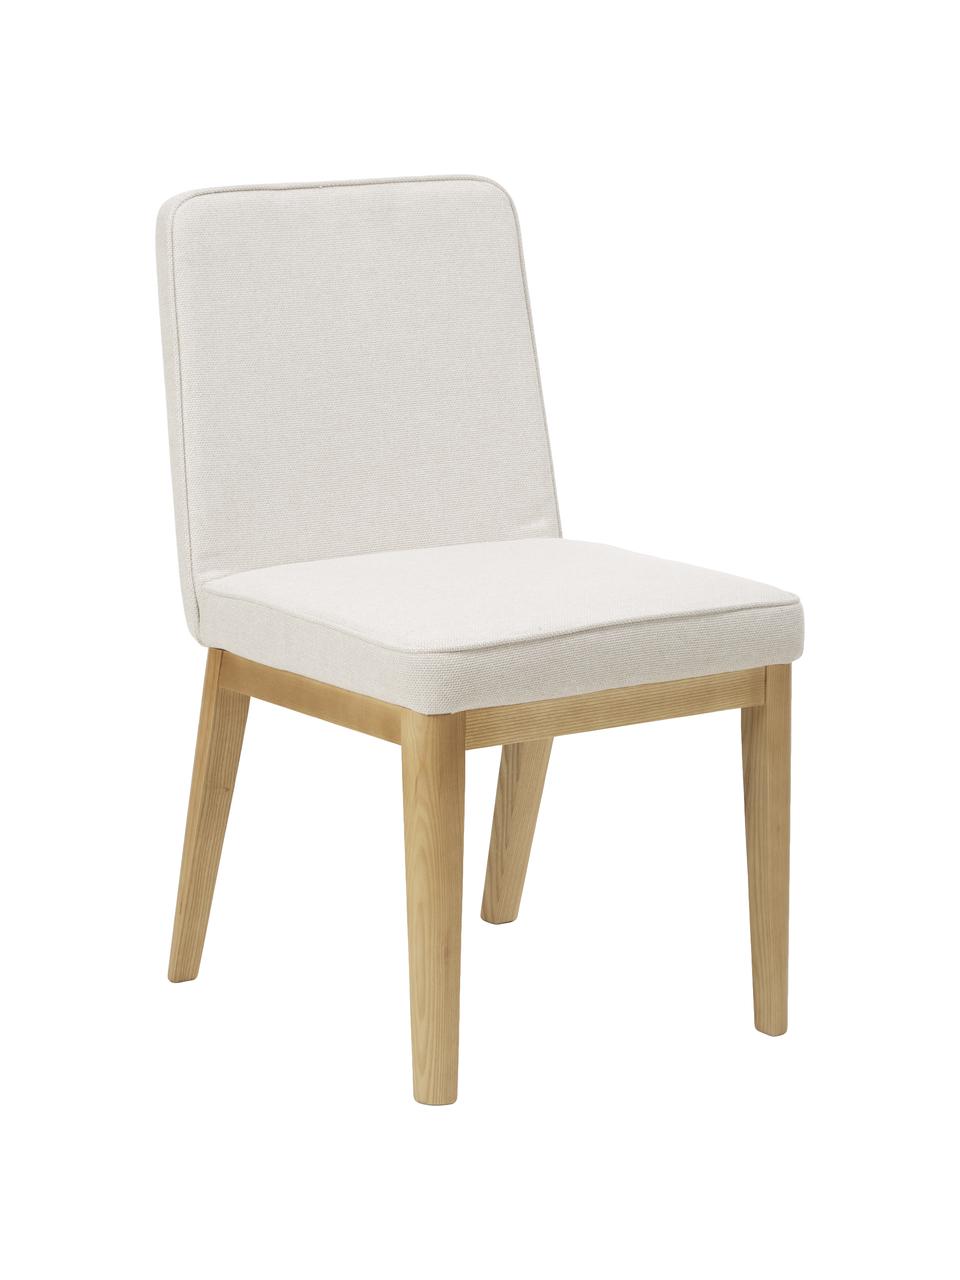 Krzesło tapicerowane z pokrowcem Russell, Tapicerka: 100% poliester Dzięki tka, Nogi: drewno jesionowe, Biały, S 47 x W 86 cm